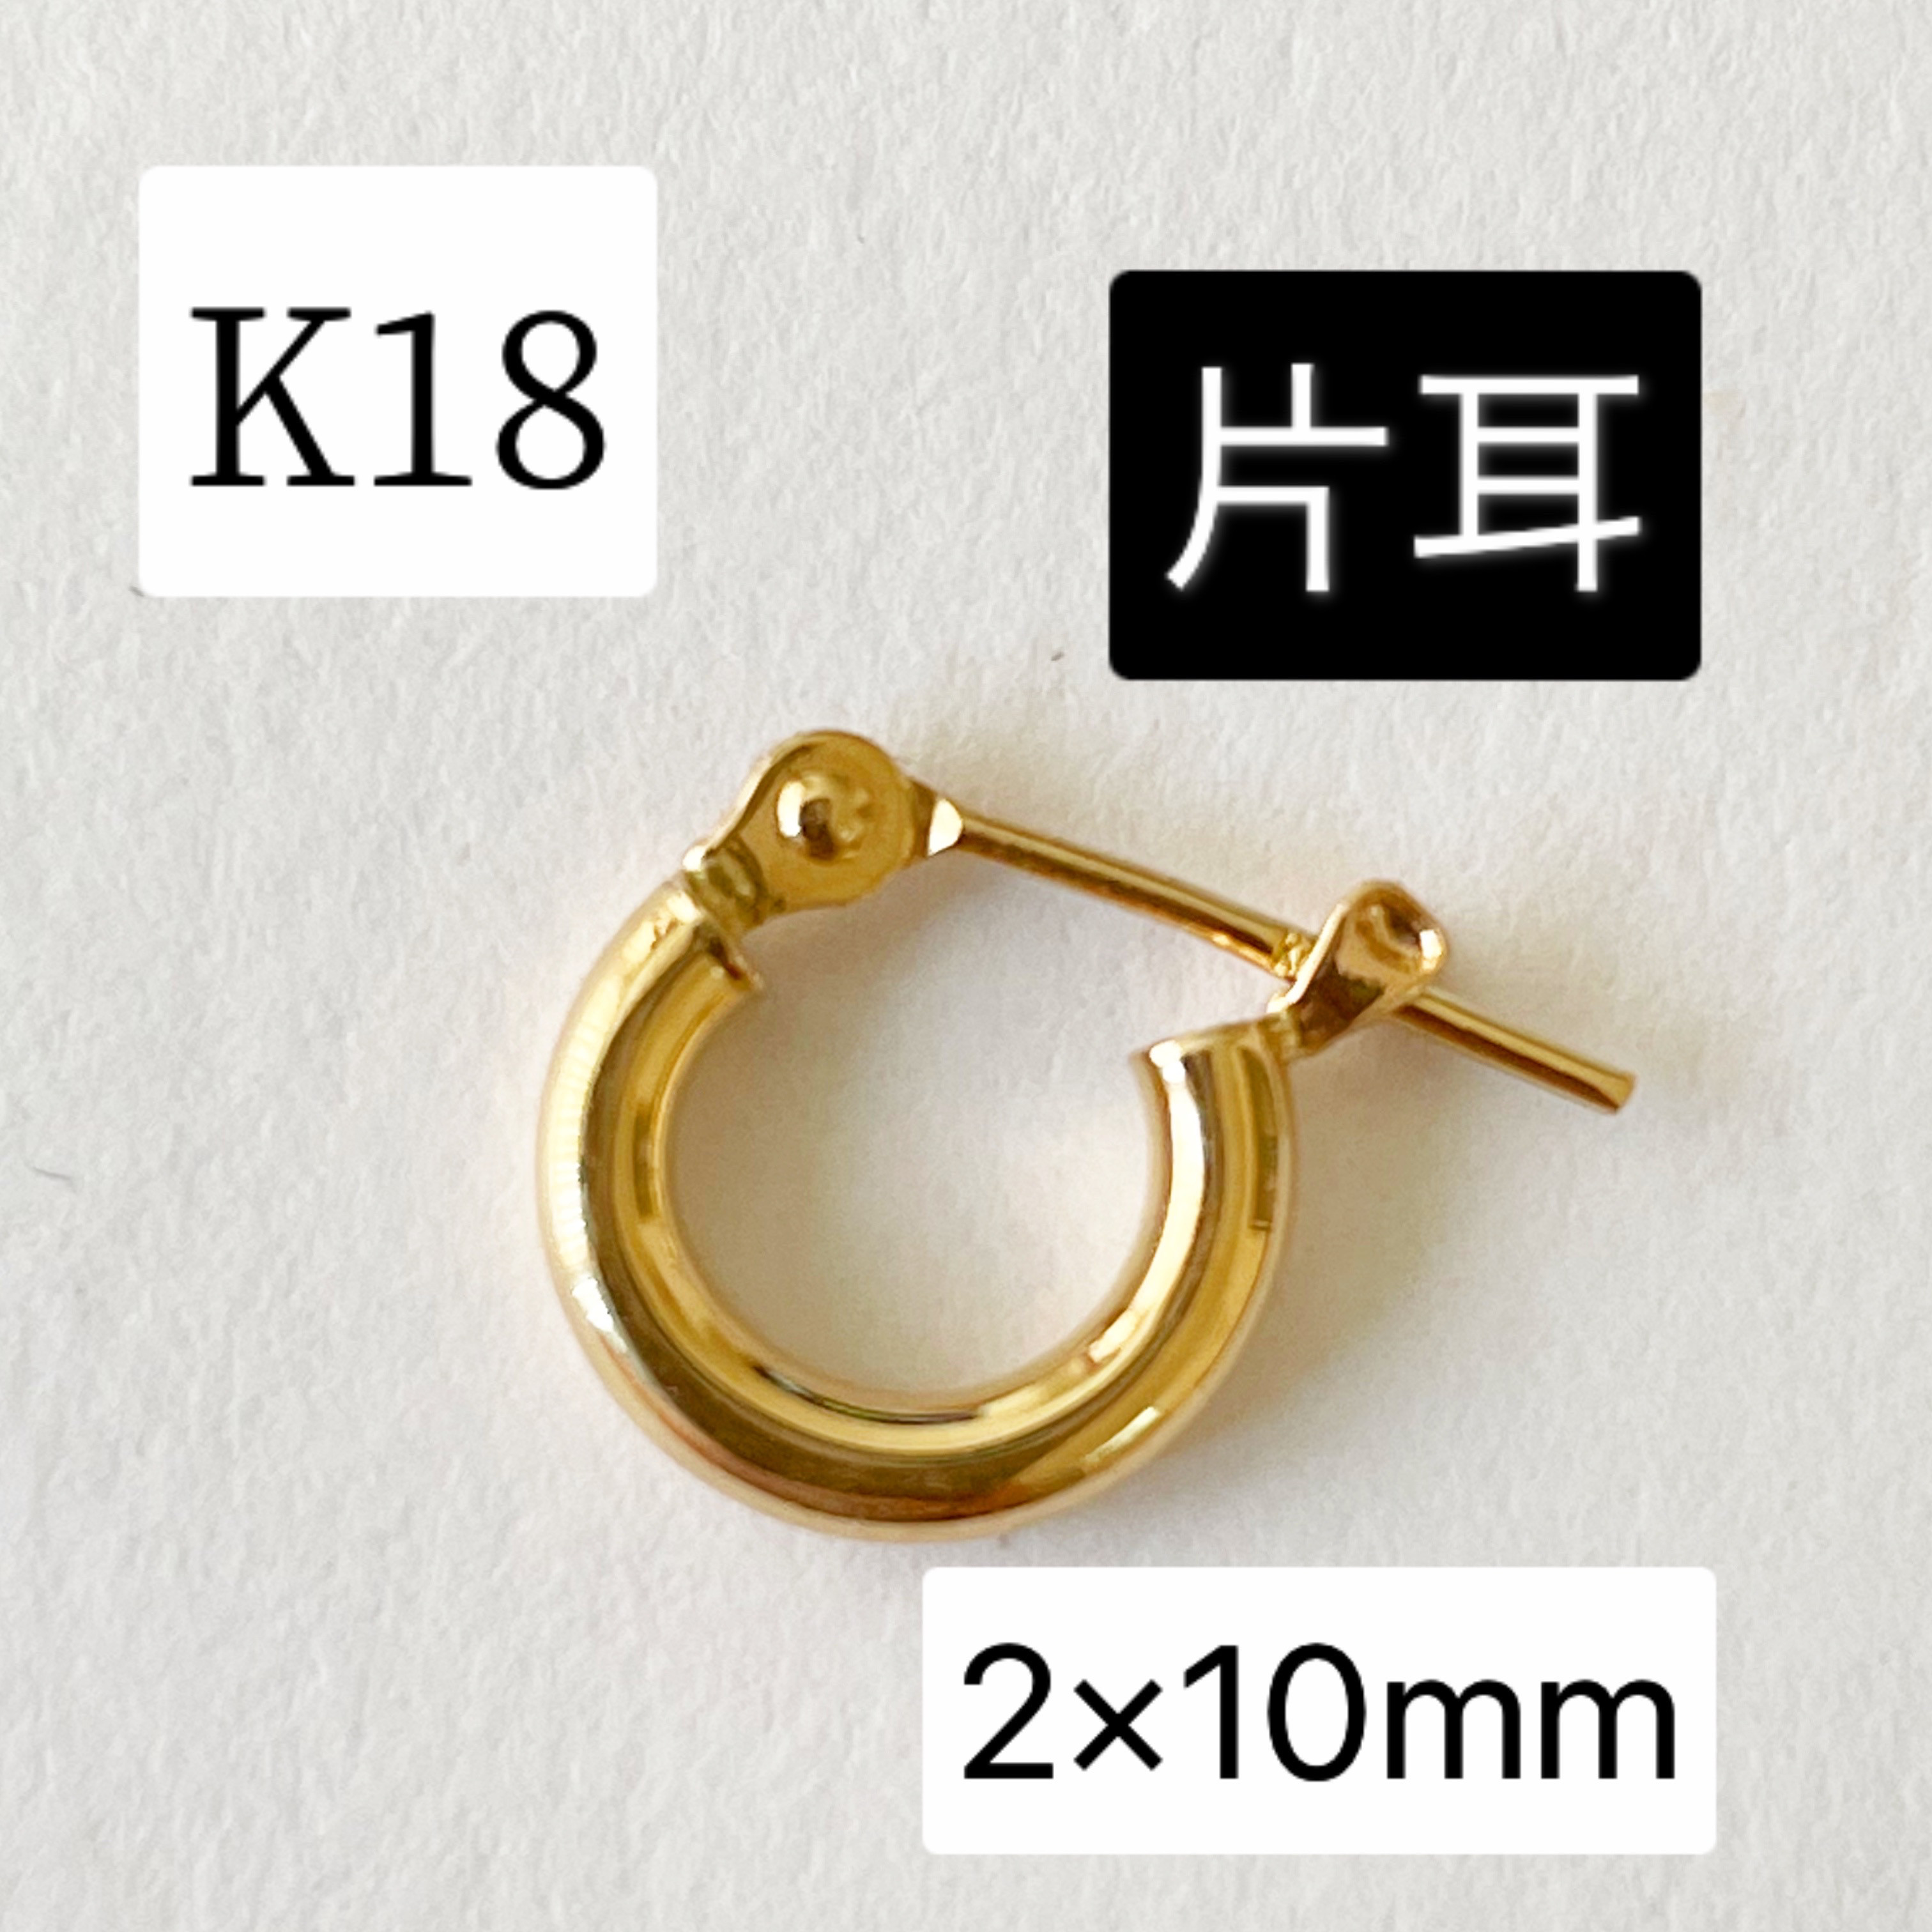 K18 フープピアス 2×10mm 18金 刻印入り本物 イエローゴールド メンズ 